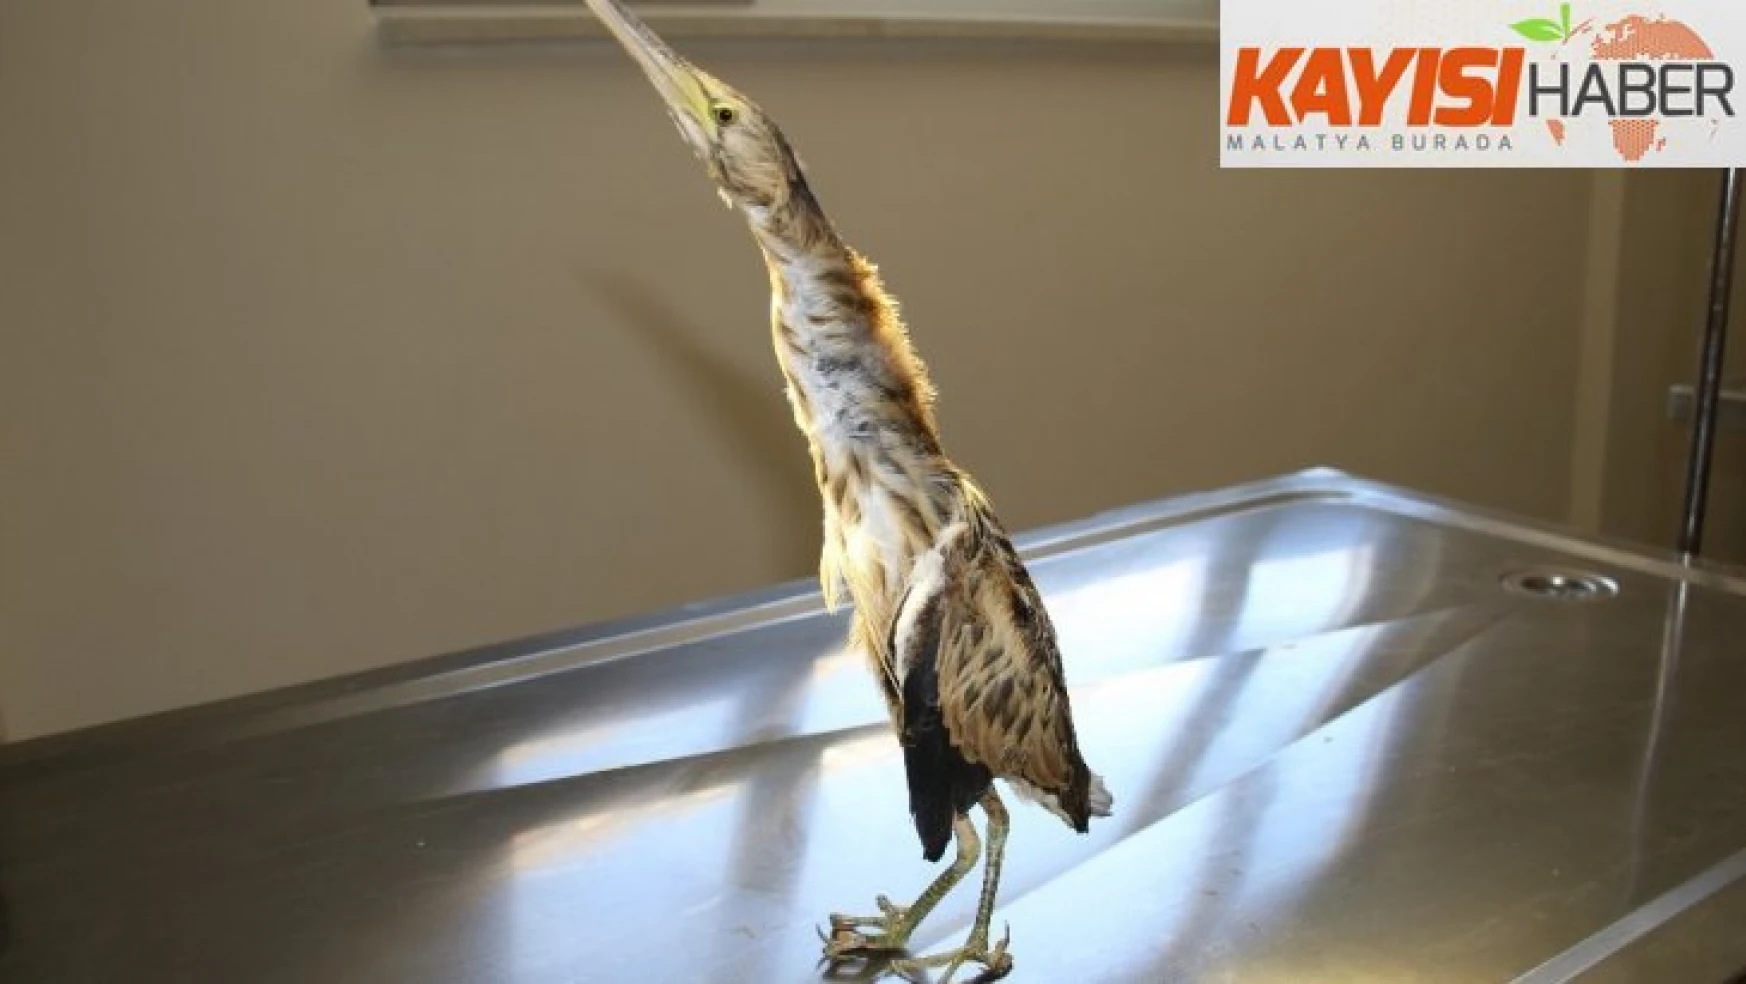 Yaralı Hint Gölet Balıkçıl kuşu tedavi altına alındı